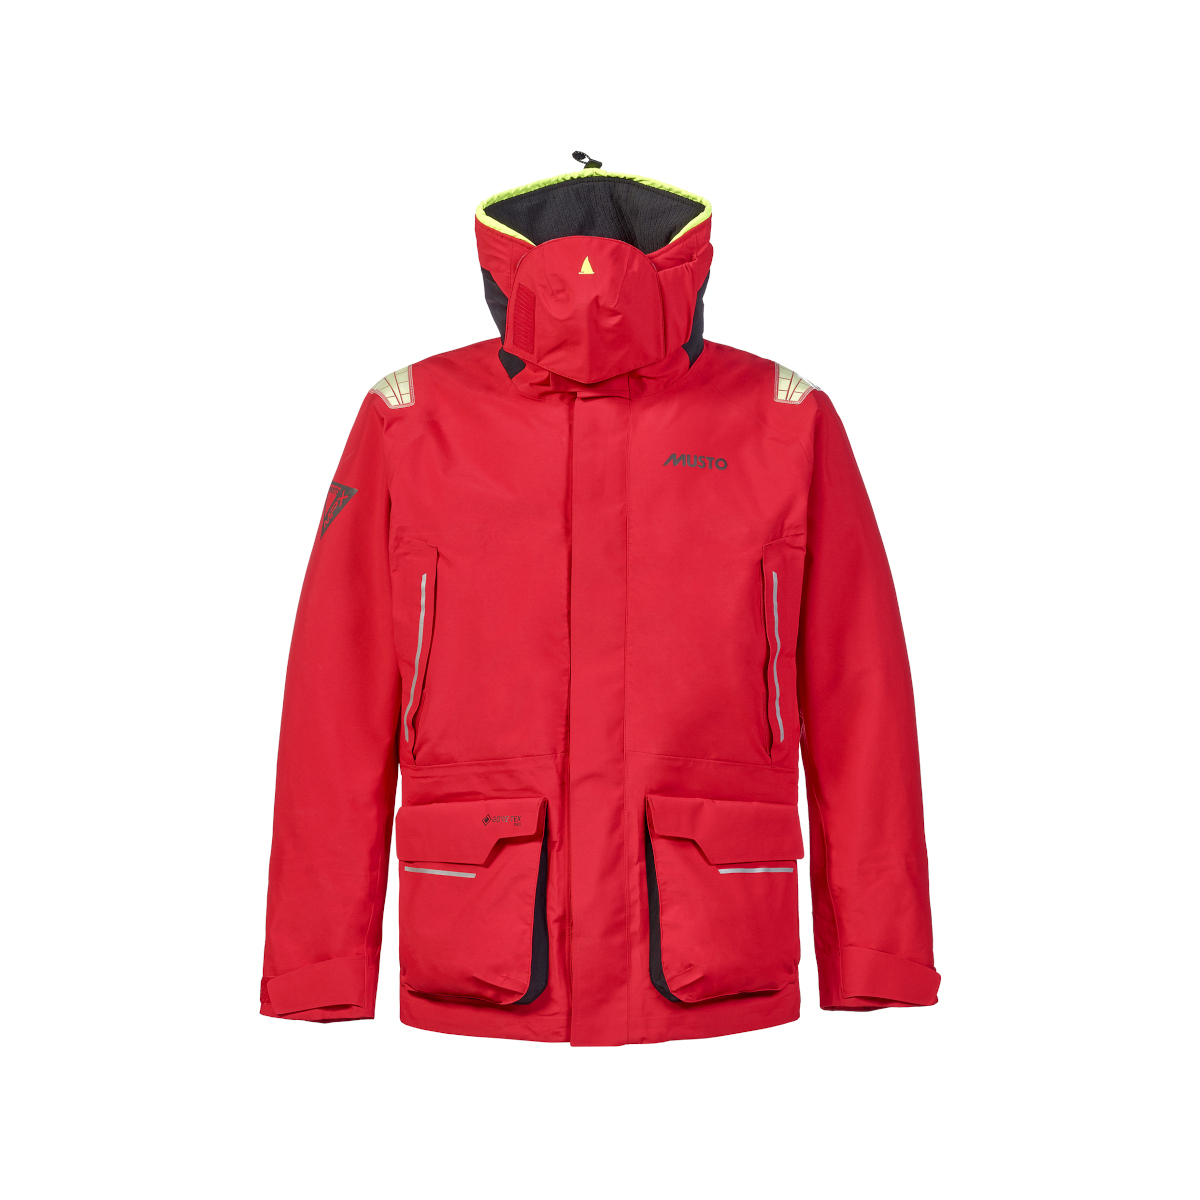 Musto MPX Gore-Tex Pro Offshore 2.0 veste de voile homme rouge, taille XS